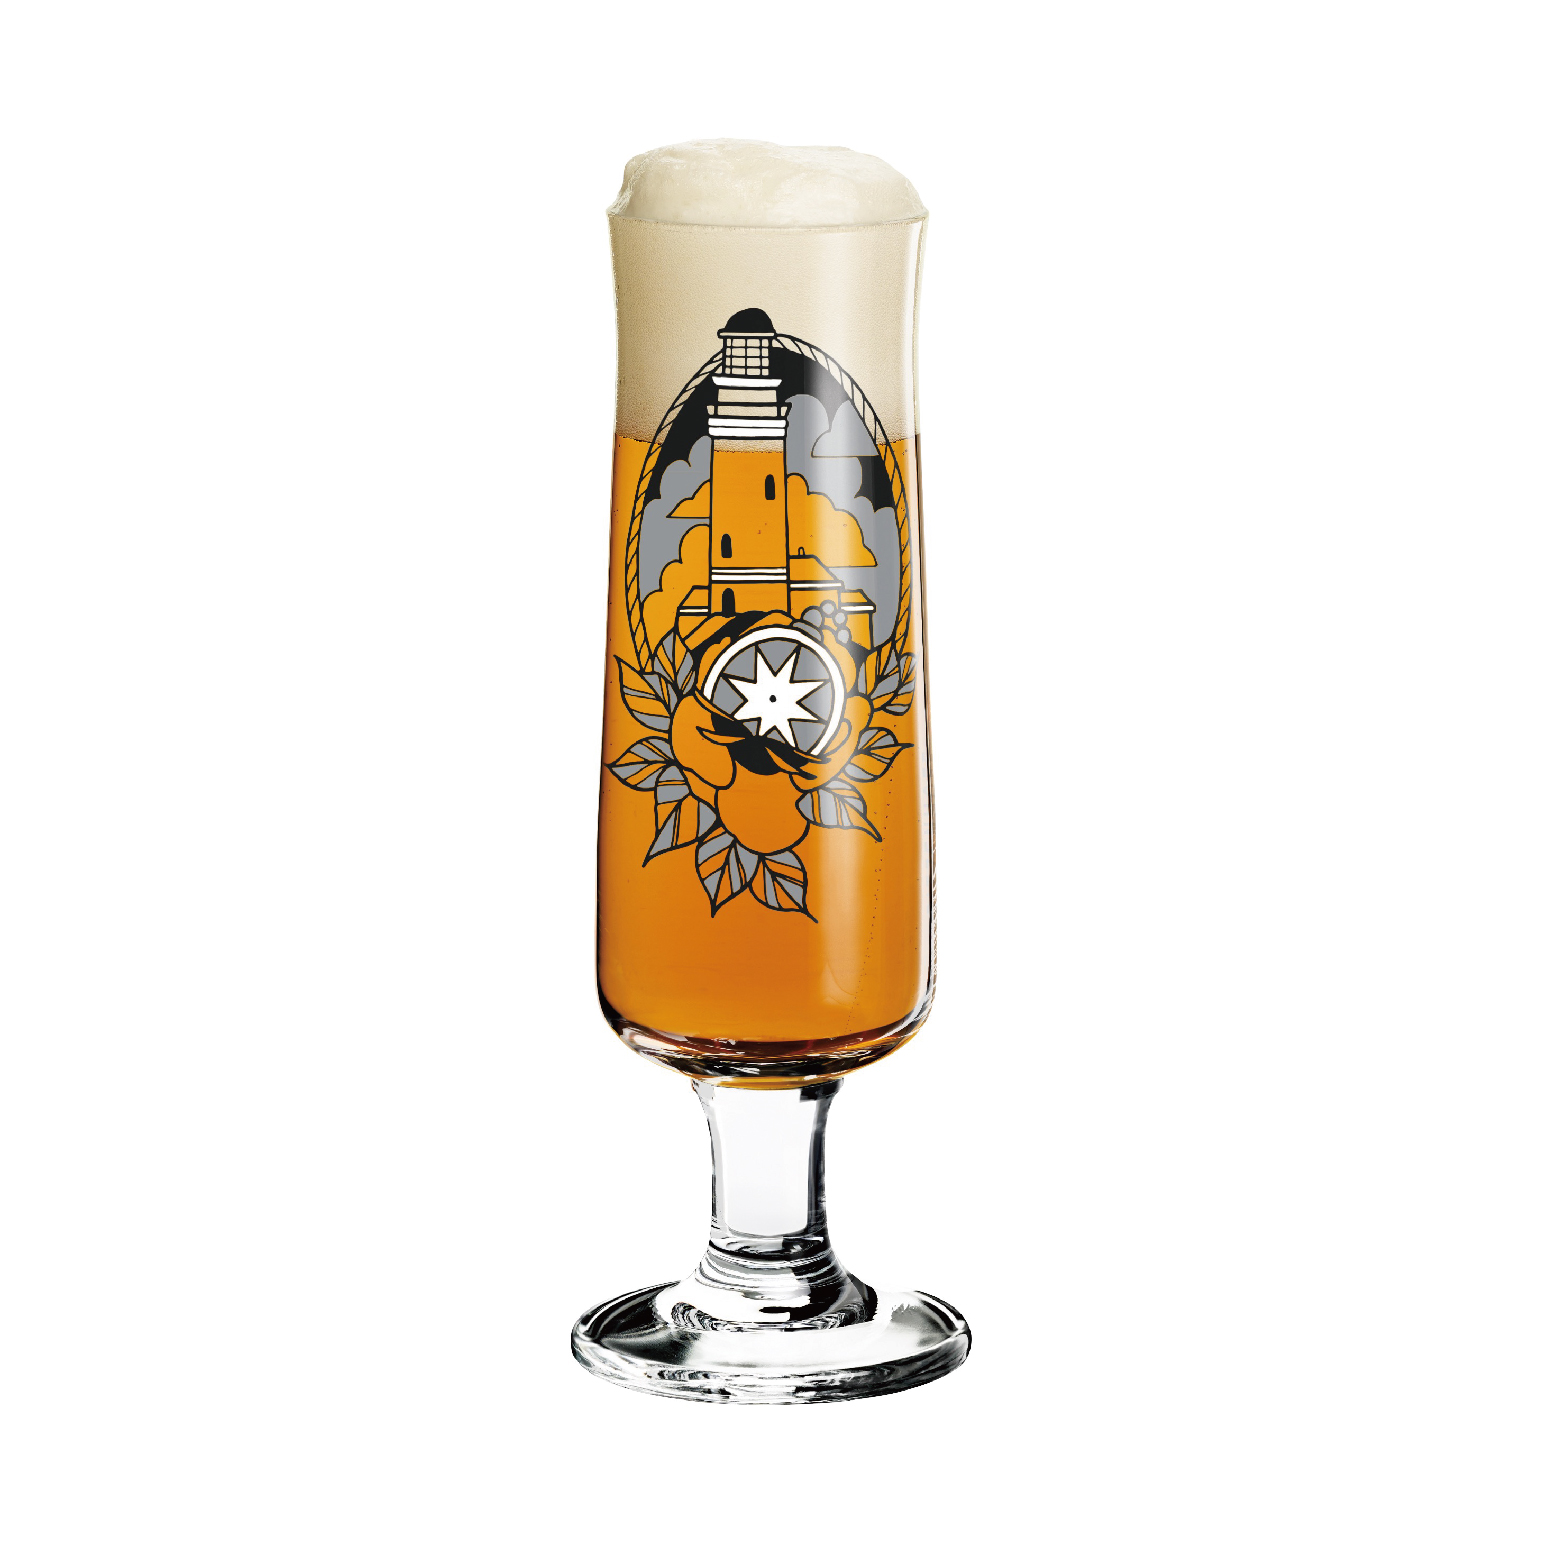 【德國 RITZENHOFF】 新式啤酒杯 -燈塔-390ML